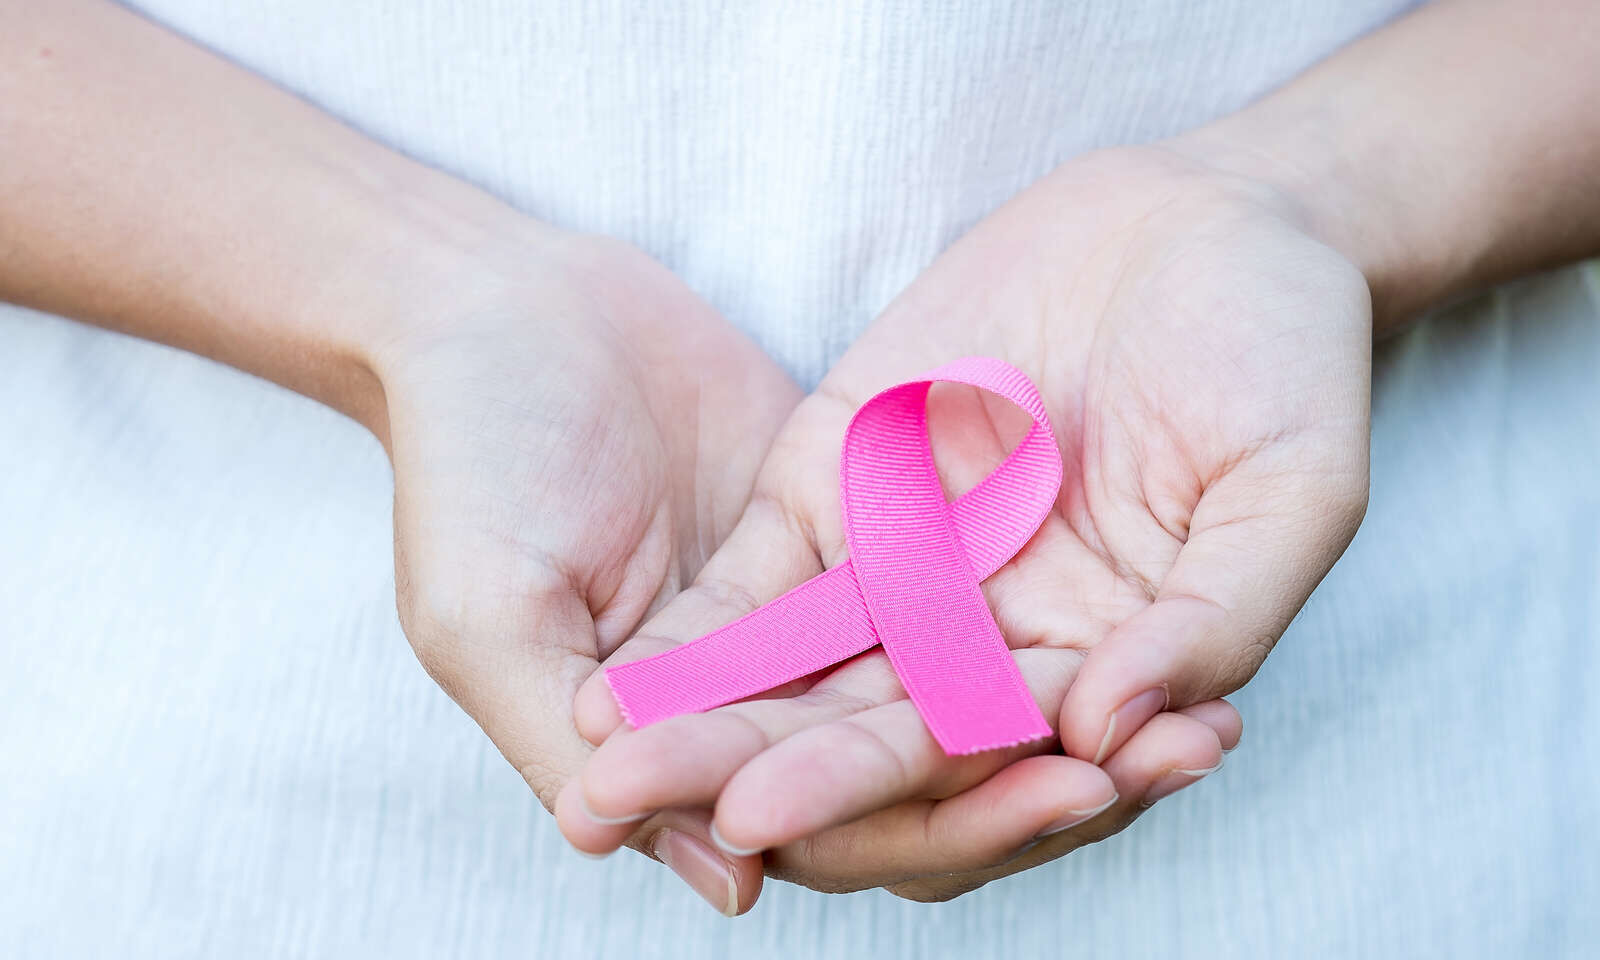 الكشف المبكر عن سرطان الثدي: ثورة في استخدام البروتينات كدلالات